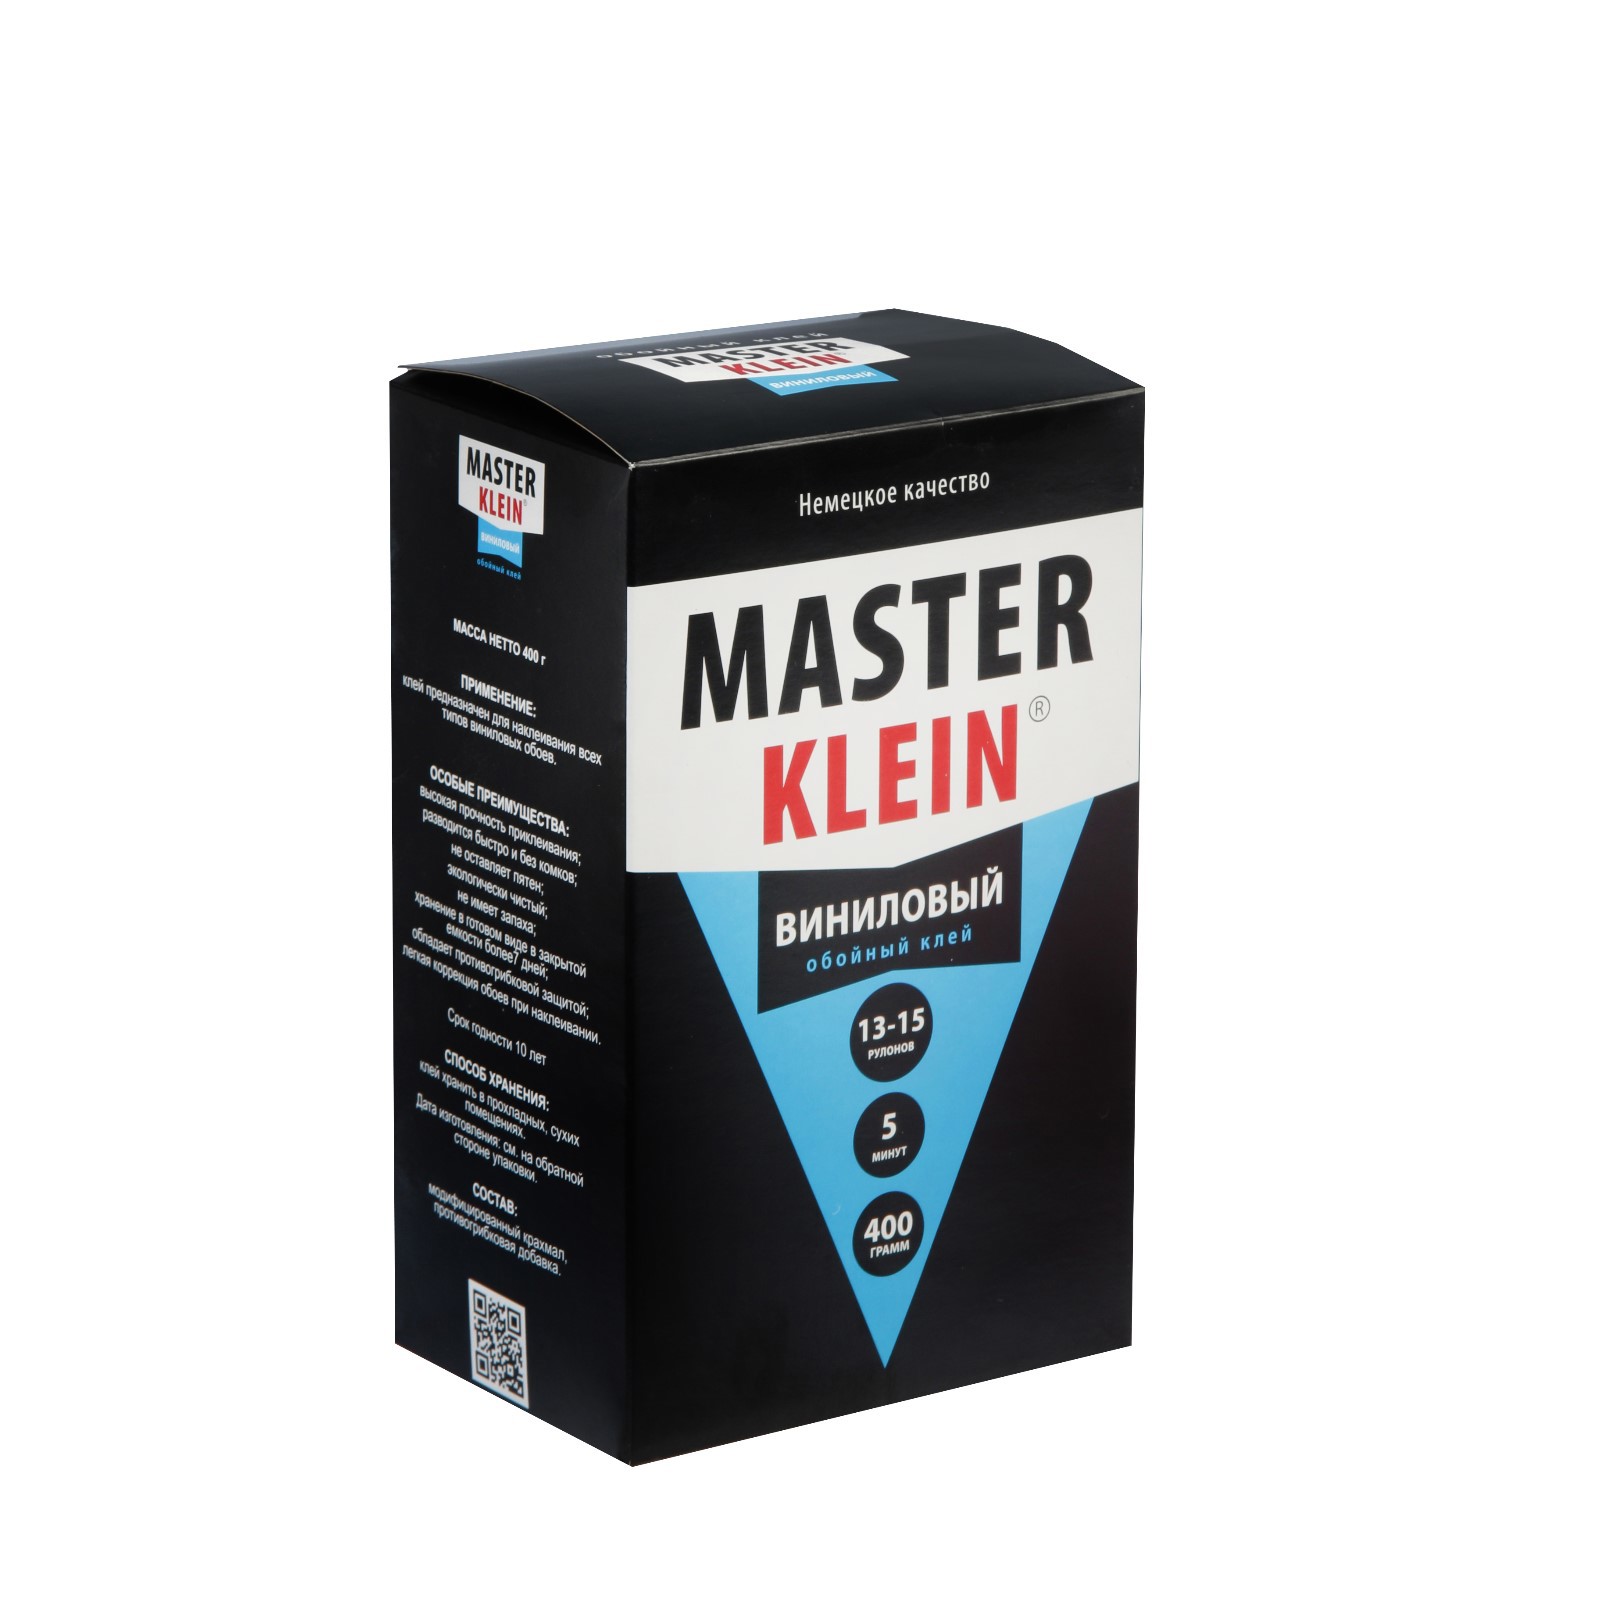  обойный Master Klein специальный виниловый 400 г, 10 м2 по цене .